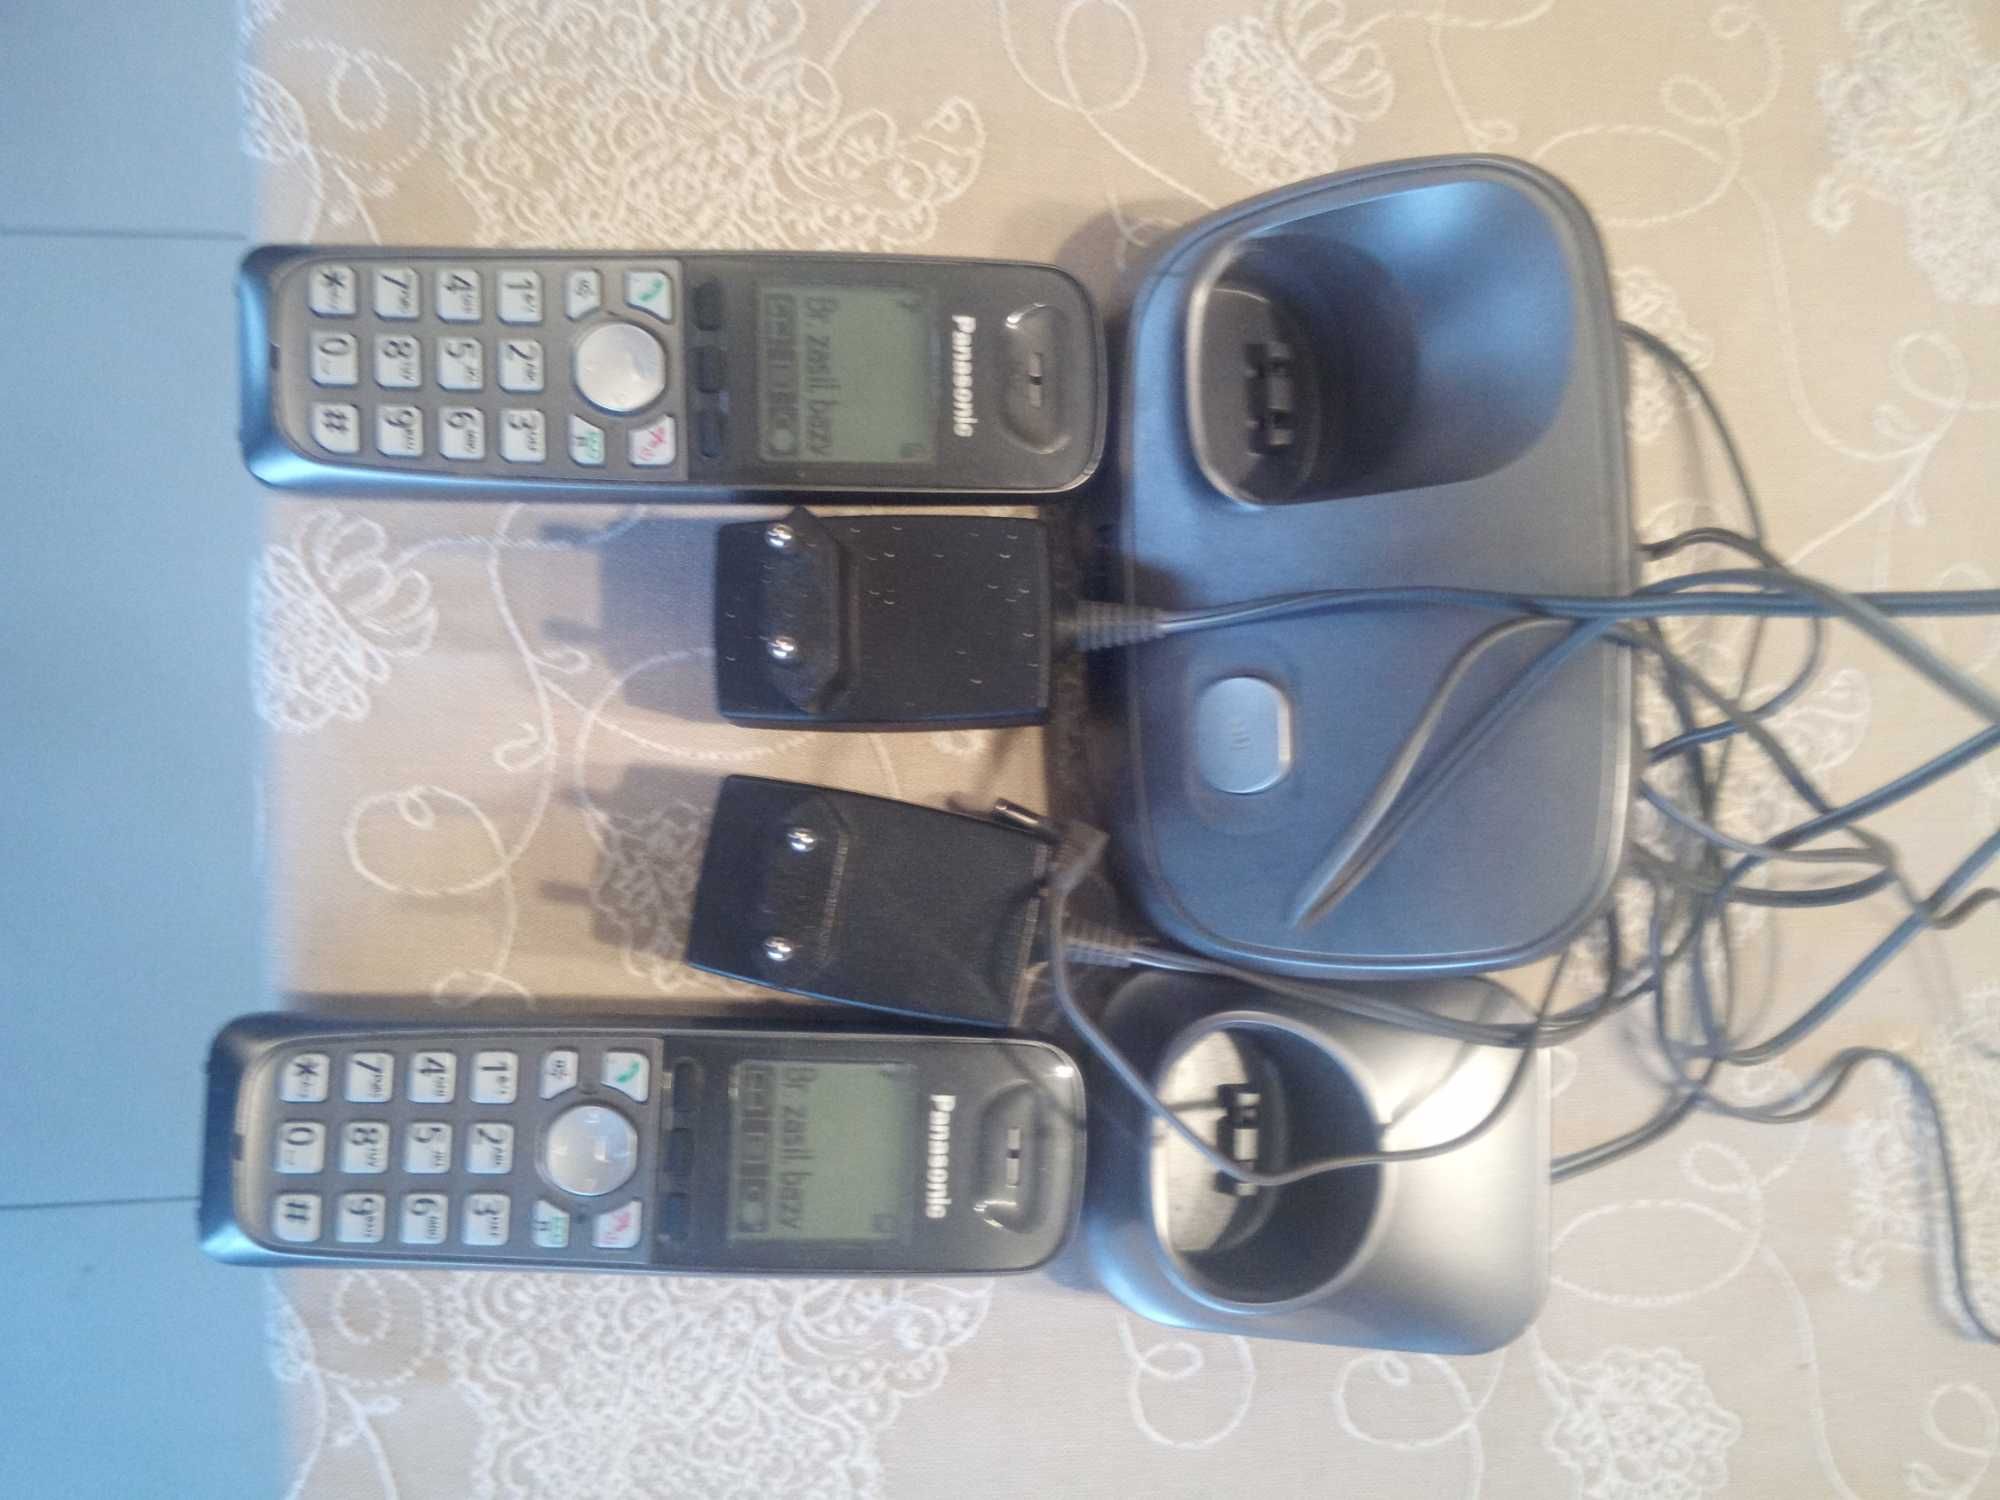 Telefon stacjonarny VoIP Panasonic KX - TG6511PD bezprzewodowy